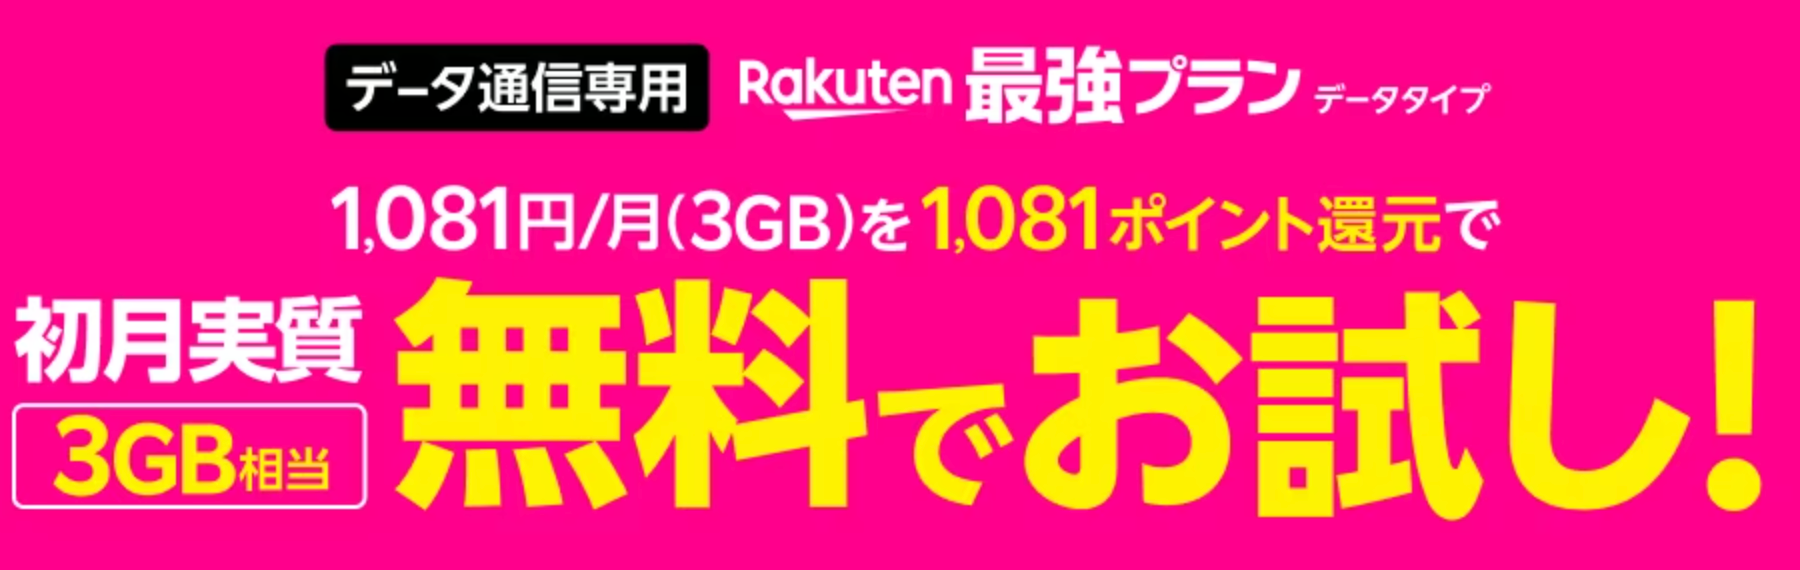  Rakuten最強プラン（データタイプ）申し込みキャンペーンの画面キャプチャ